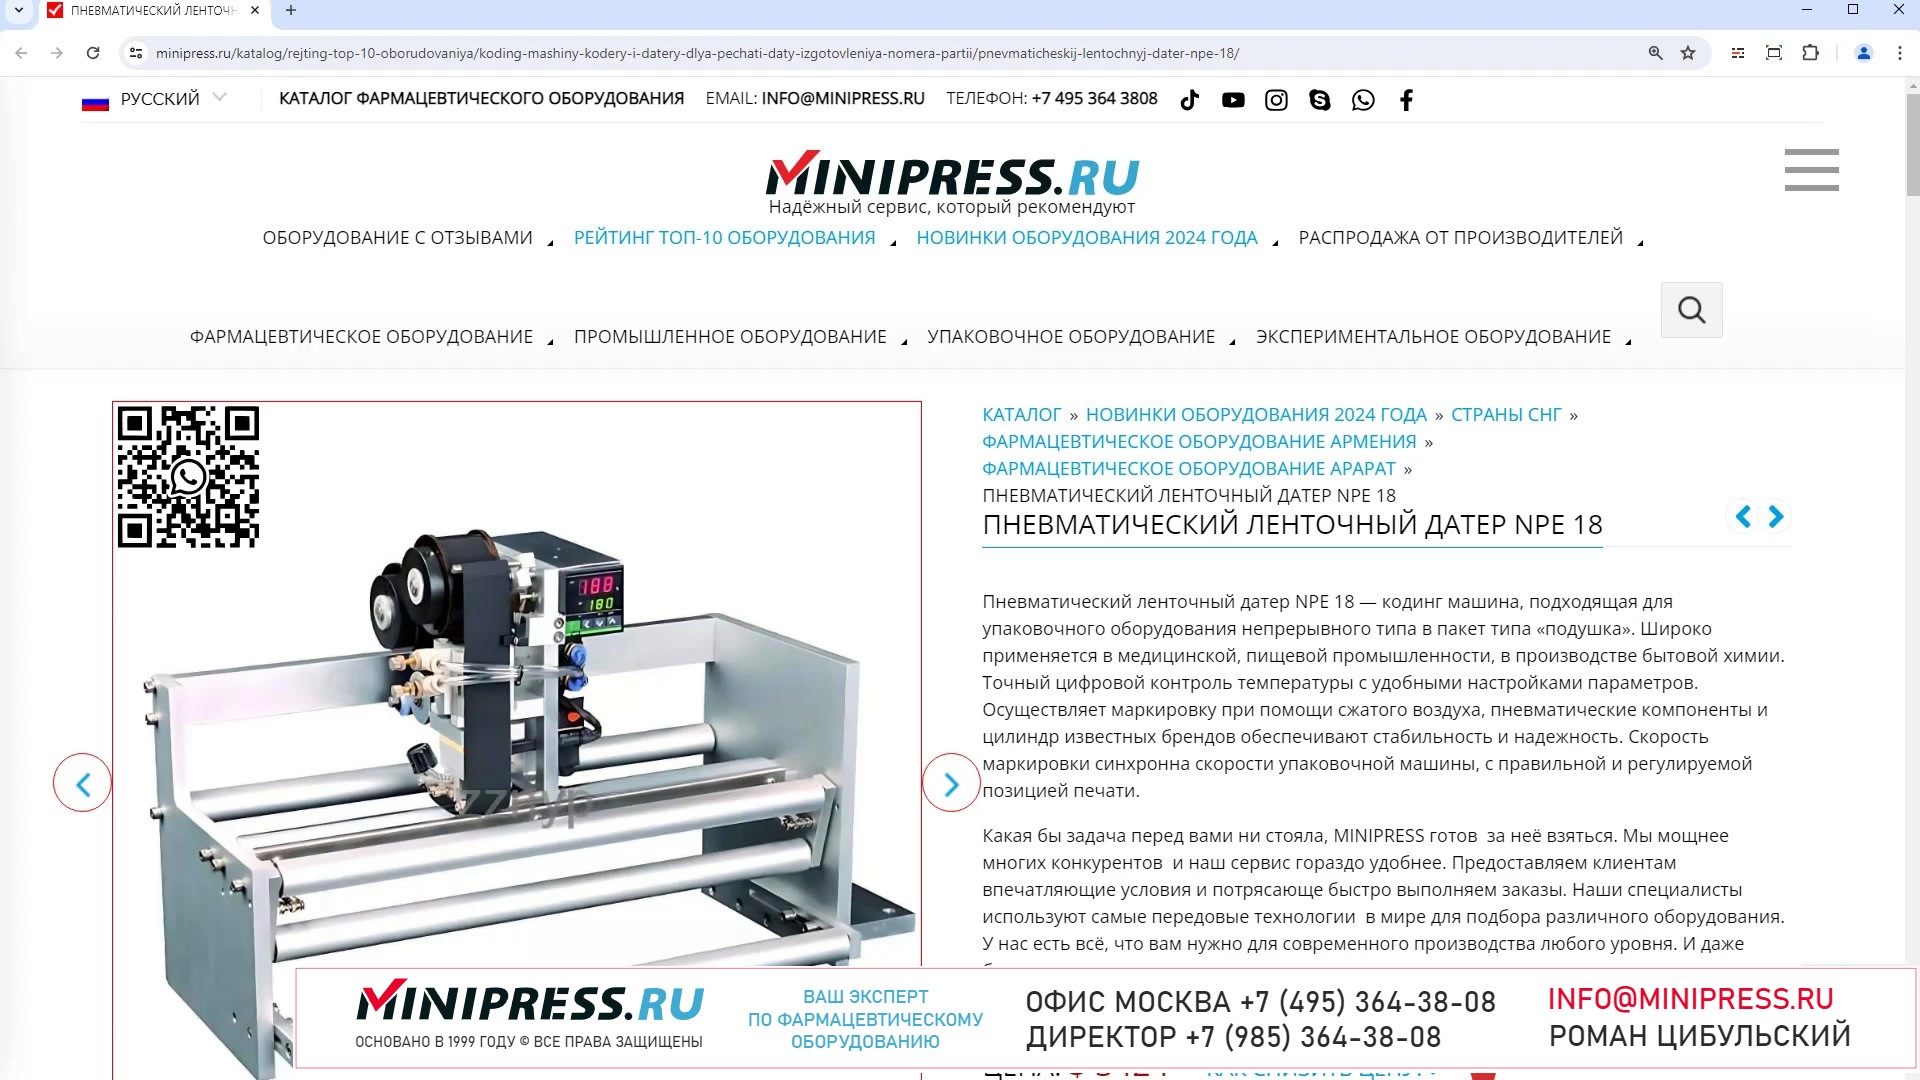 Minipress.ru Пневматический ленточный датер NPE 18